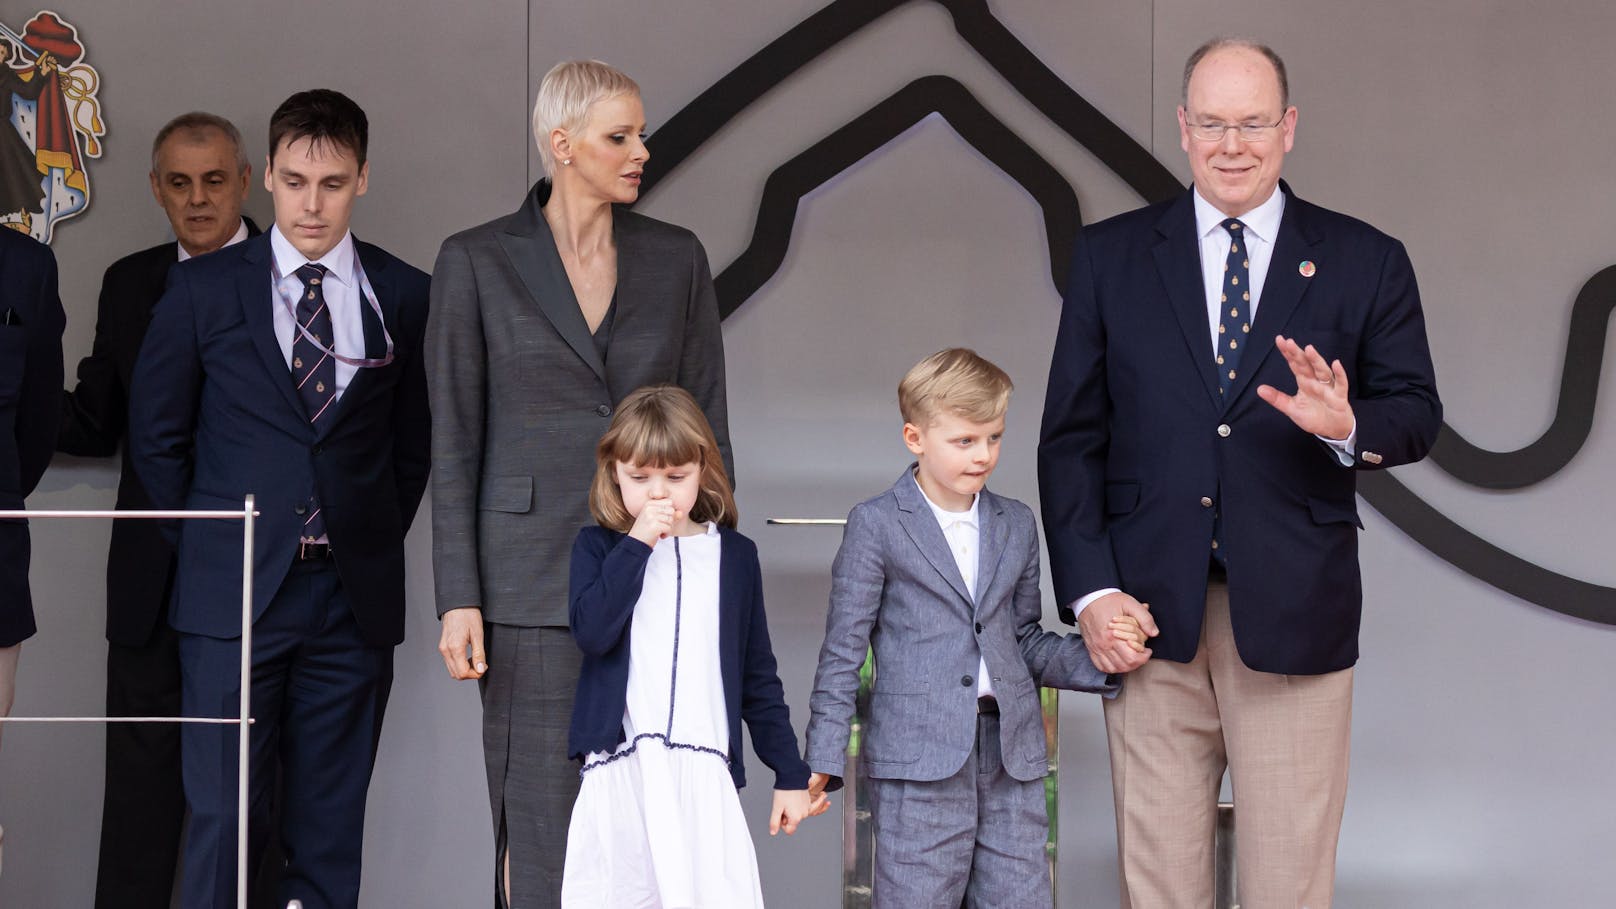 Die monegassische Fürstenfamilie präsentierte sich bei der Formel-E-Weltmeisterschaft. Doch die Ehefrau von Prinz Albert sieht nicht glücklich aus.